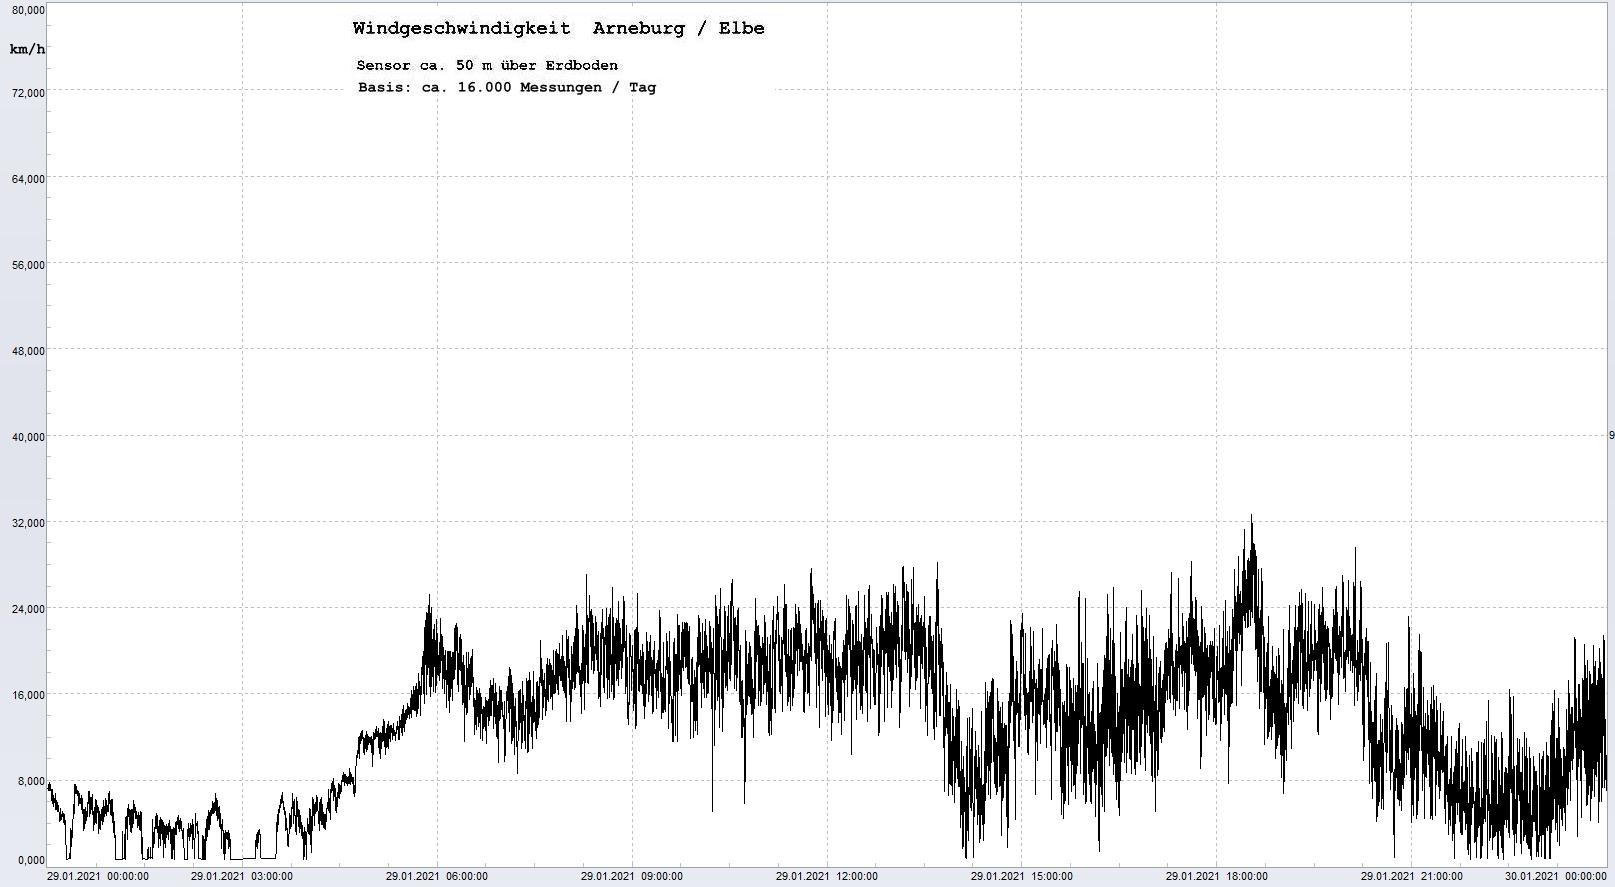 Arneburg Tages-Diagramm Winddaten, 29.01.2021
  Histogramm, Sensor auf Gebude, ca. 50 m ber Erdboden, Basis: 5s-Aufzeichnung